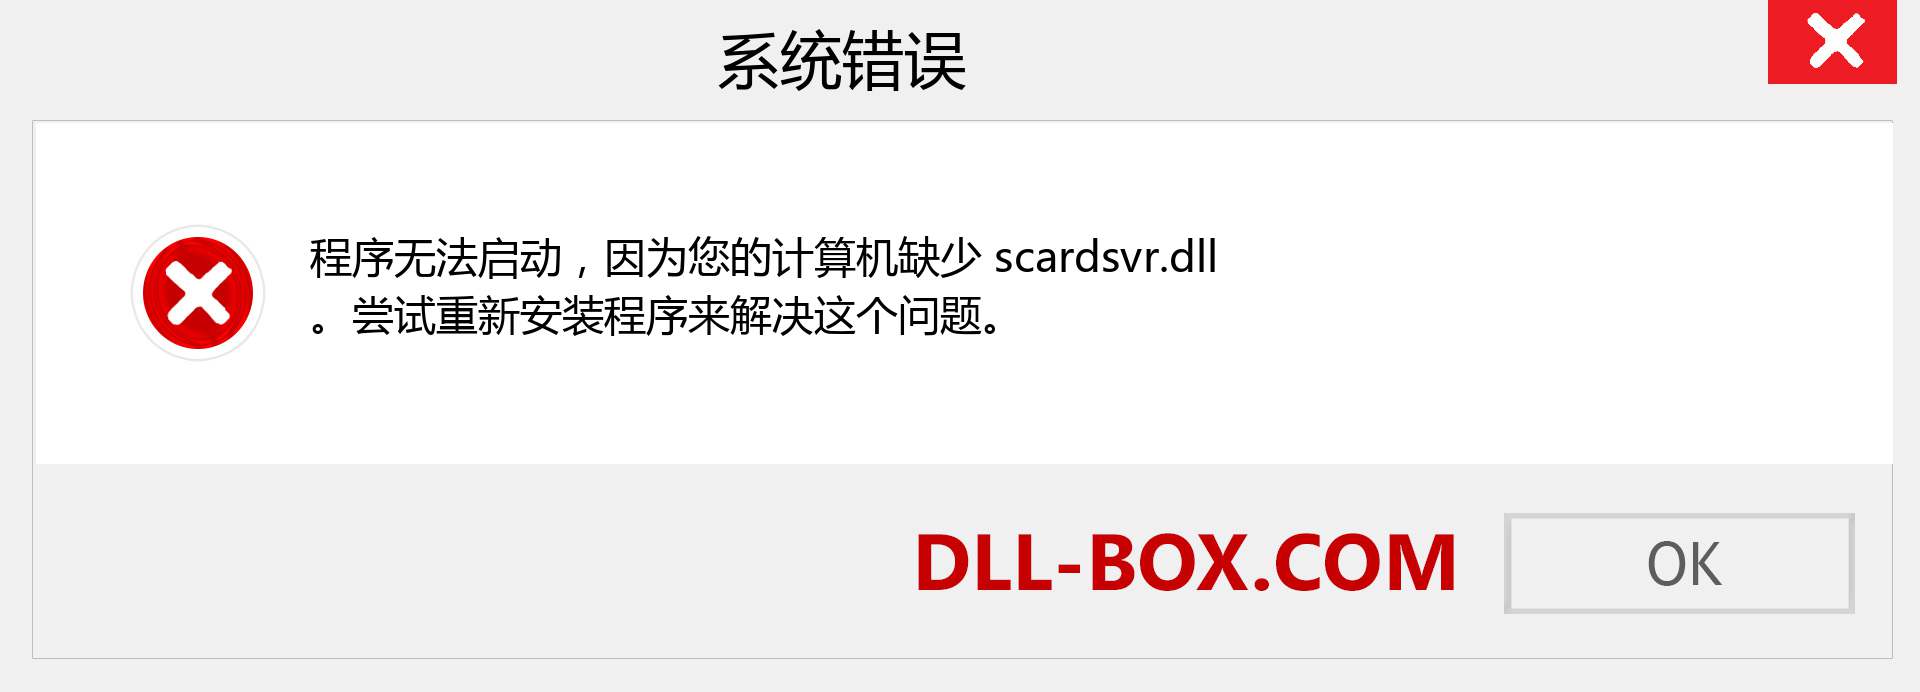 scardsvr.dll 文件丢失？。 适用于 Windows 7、8、10 的下载 - 修复 Windows、照片、图像上的 scardsvr dll 丢失错误